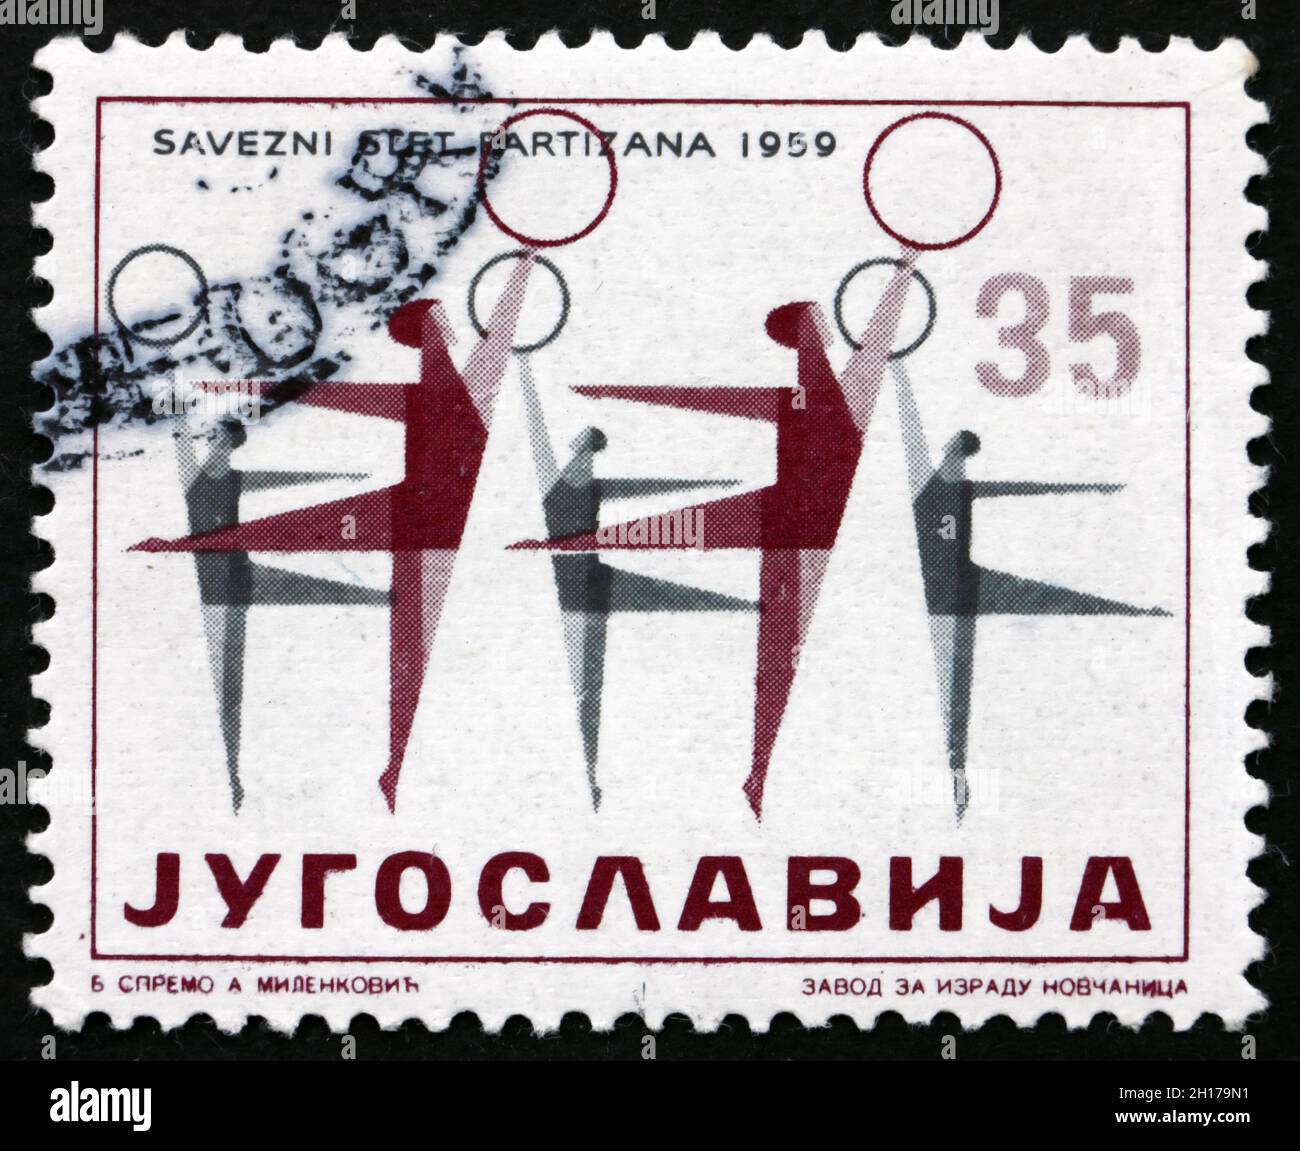 JUGOSLAWIEN - UM 1959: Eine in Jugoslawien gedruckte Briefmarke zeigt Frauen-Turnerinnen, Festival der körperlichen Kultur, um 1959 Stockfoto